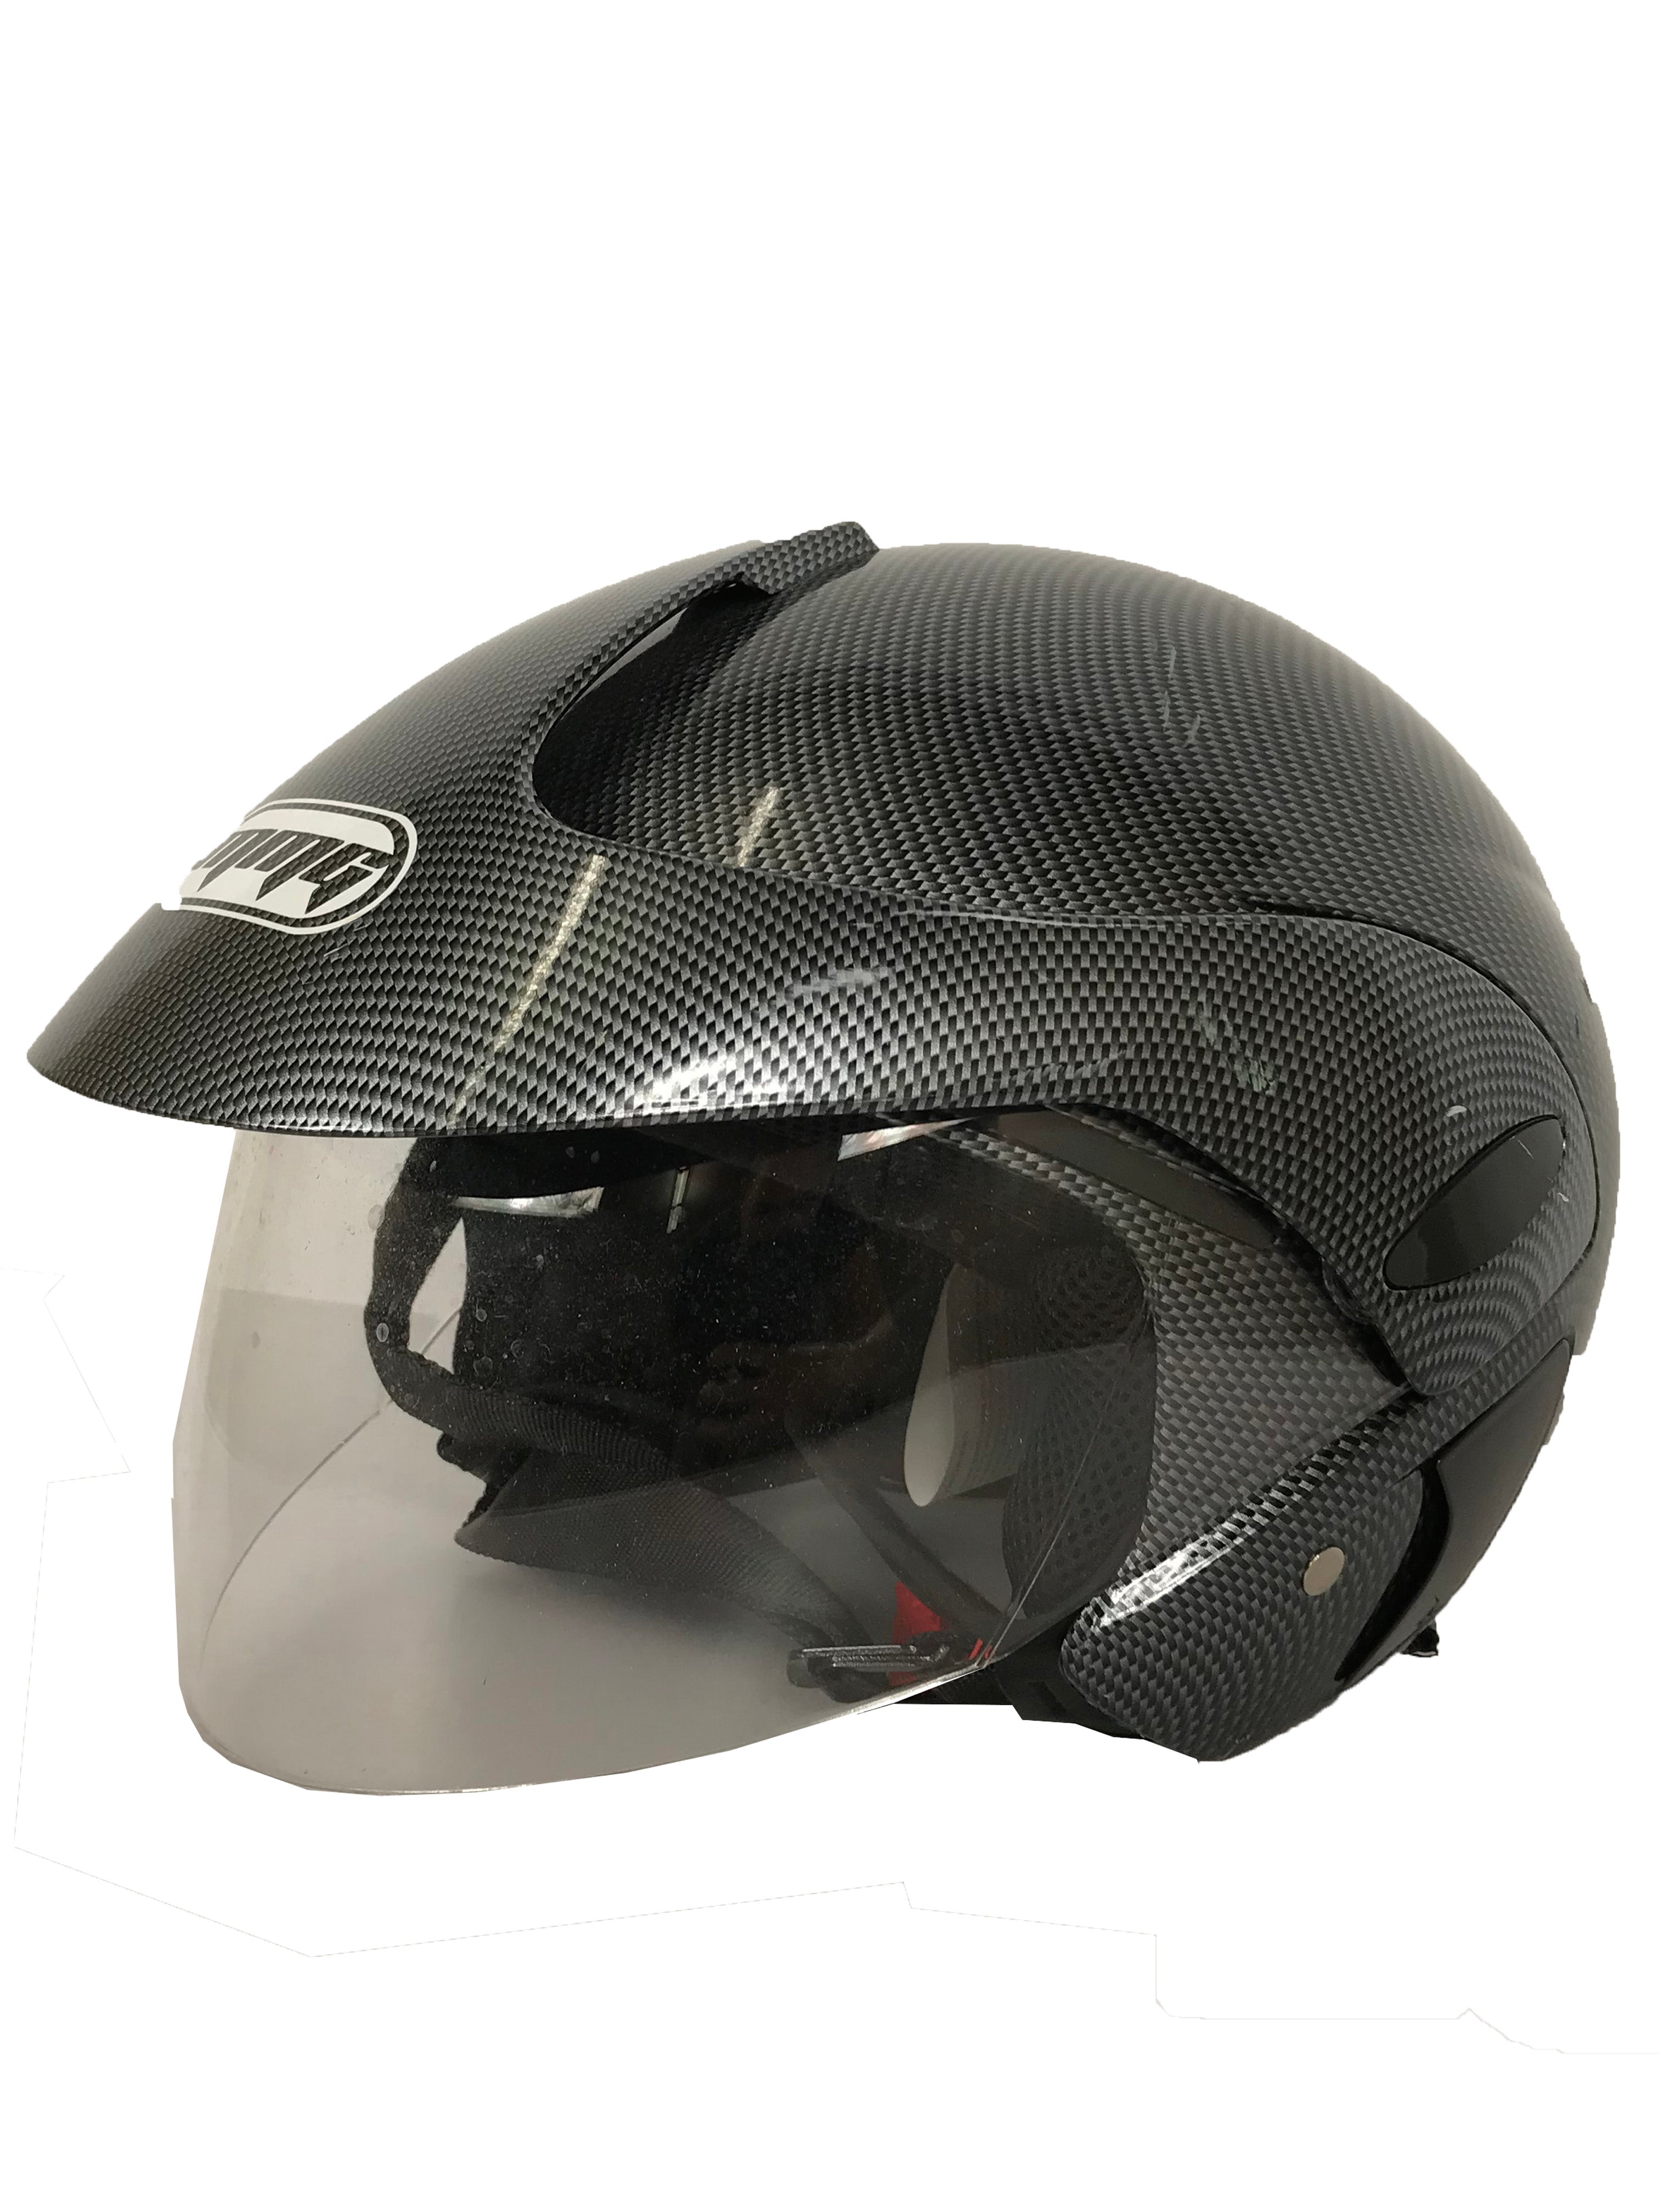 MMG Helmet Black & Gray Open Face Model 203 Unisex Large